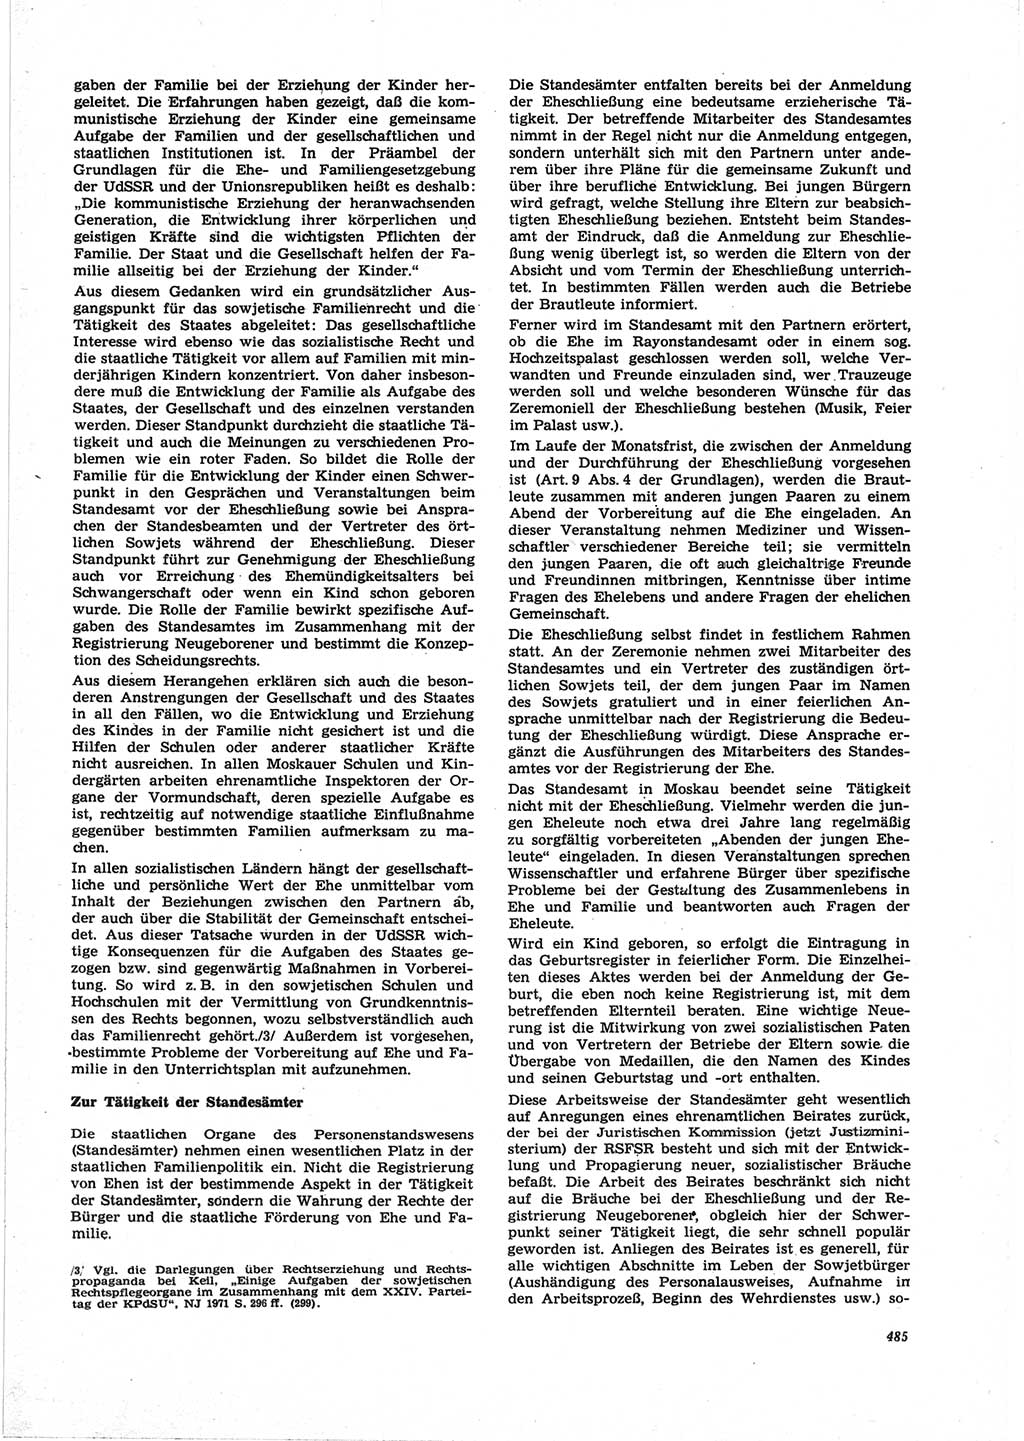 Neue Justiz (NJ), Zeitschrift für Recht und Rechtswissenschaft [Deutsche Demokratische Republik (DDR)], 25. Jahrgang 1971, Seite 485 (NJ DDR 1971, S. 485)